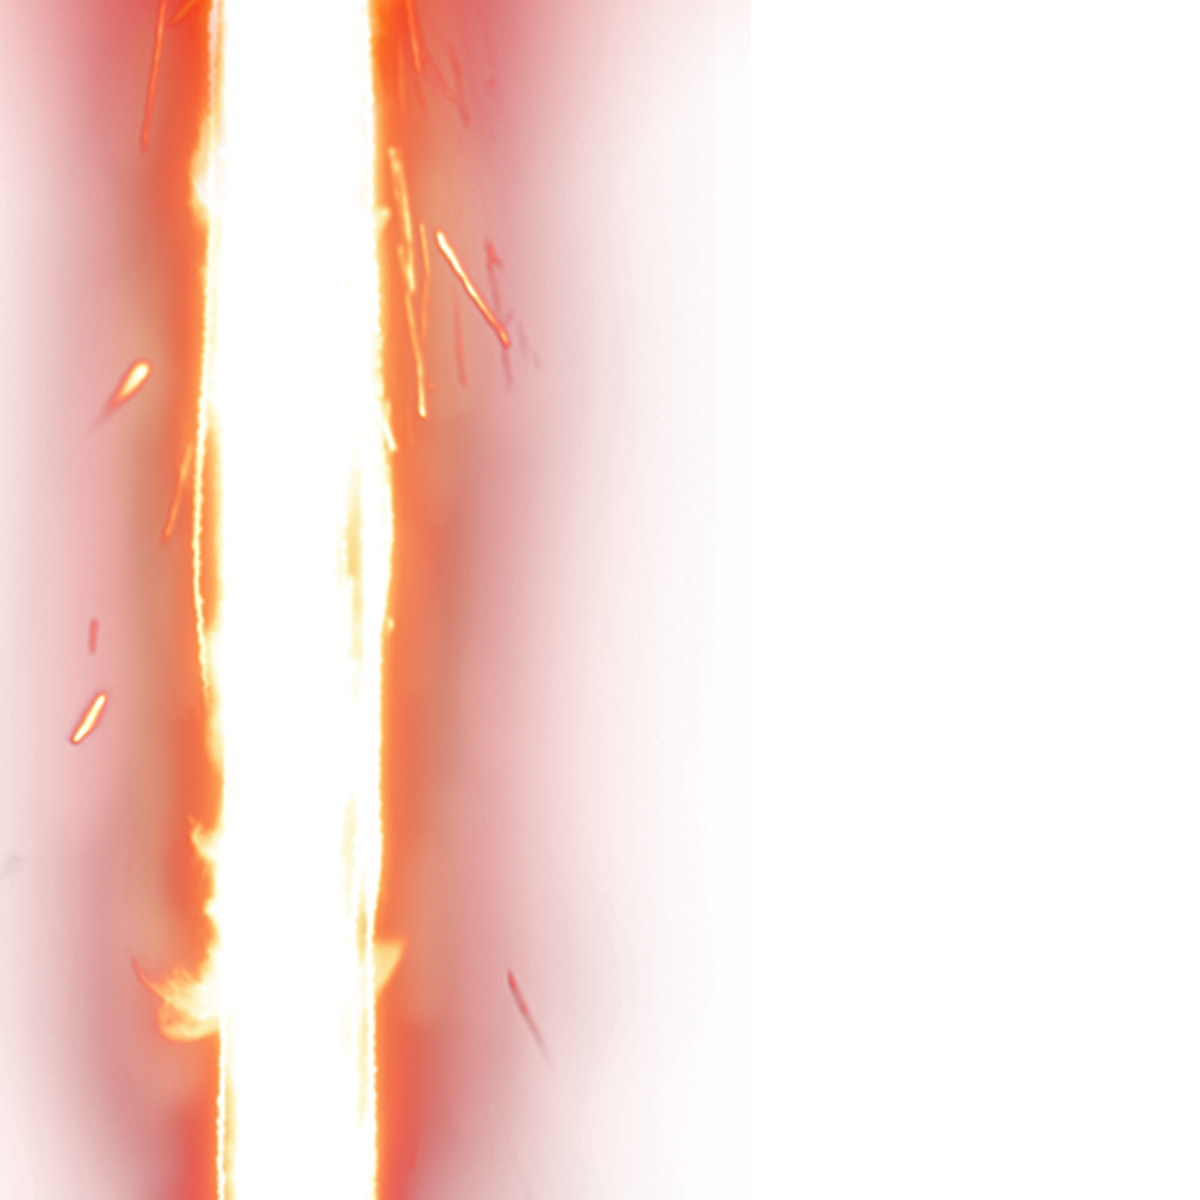 Red Lightsaber Transparent Image